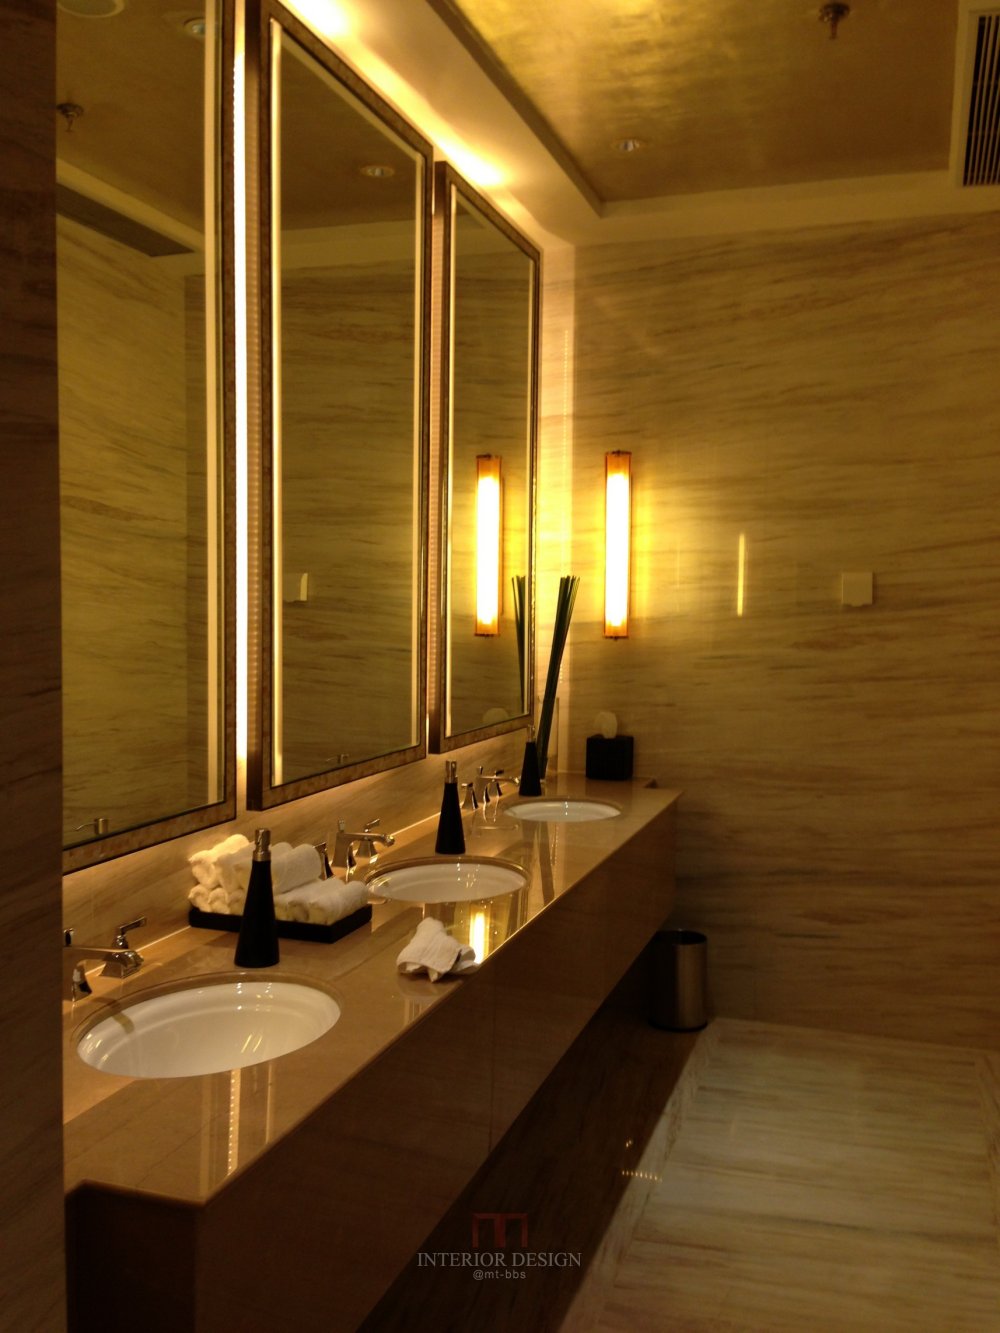 成都丽思卡尔顿酒店The Ritz-Carlton Chengdu(欢迎更新,高分奖励)_IMG_6393.JPG